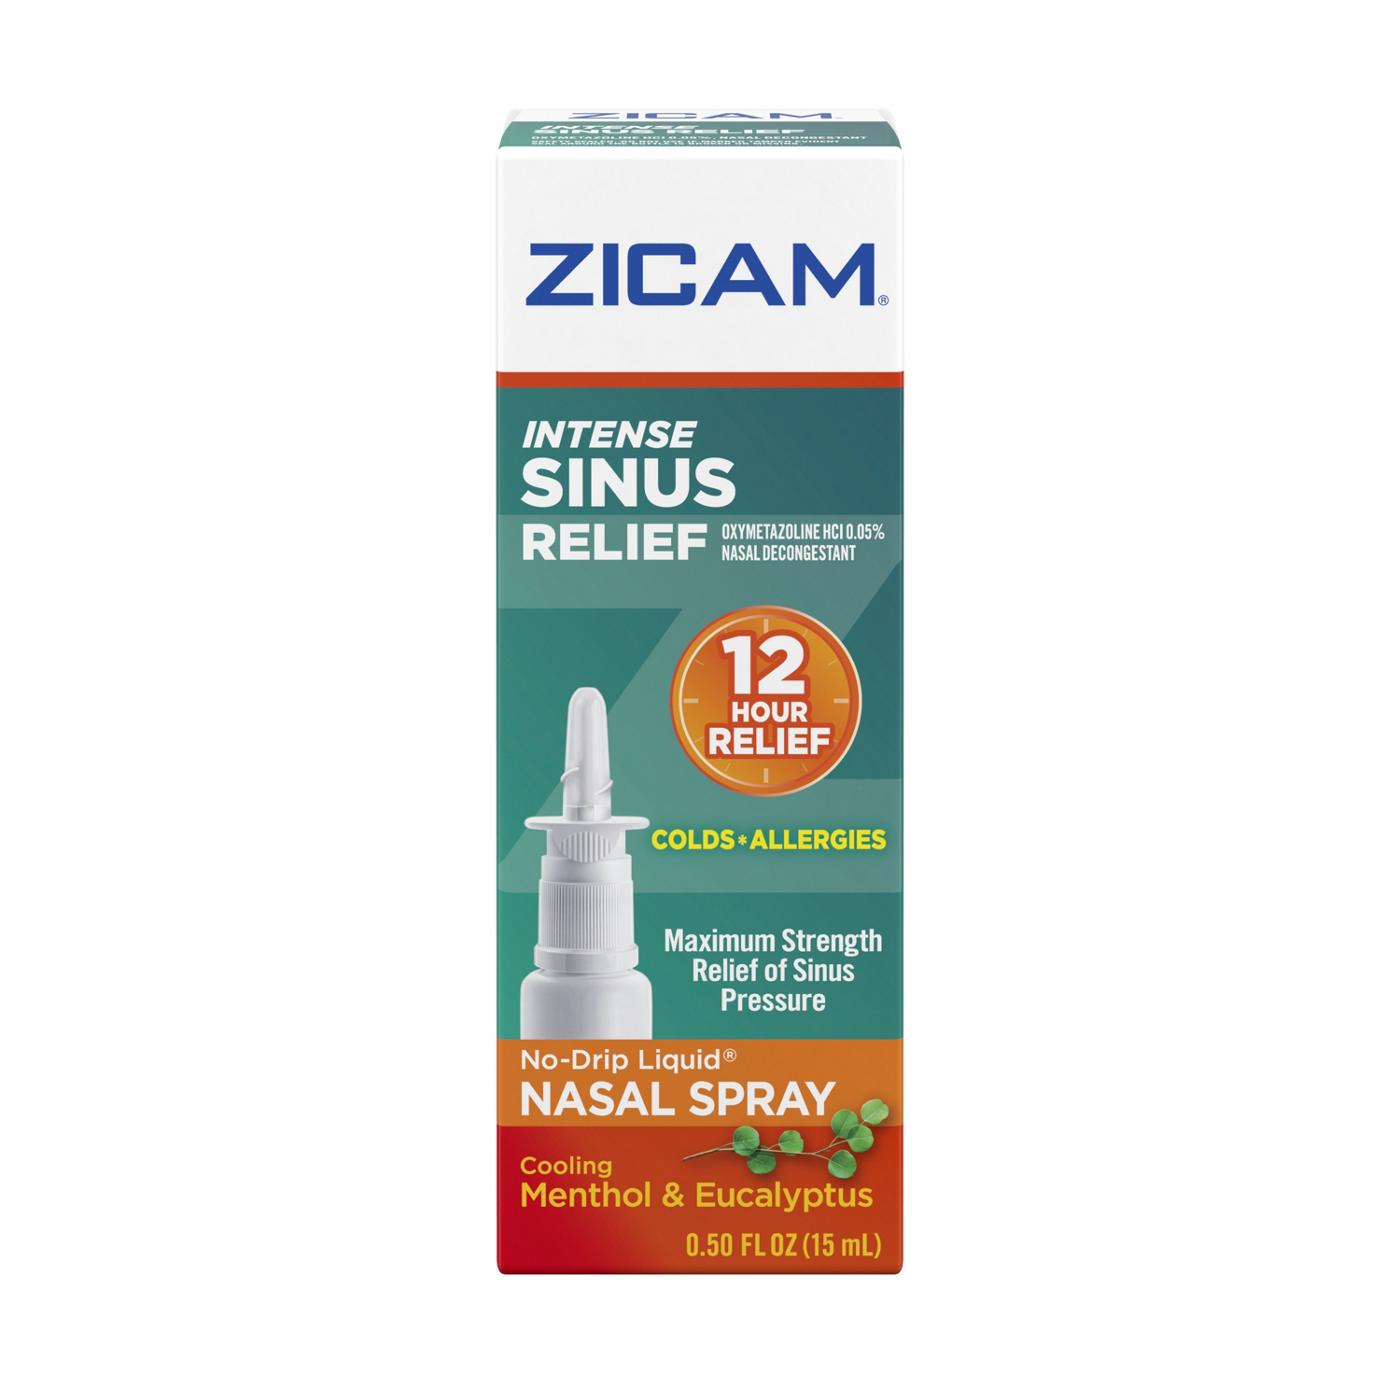 Zicam Intense Sinus Relief Nasal Spray; image 1 of 2